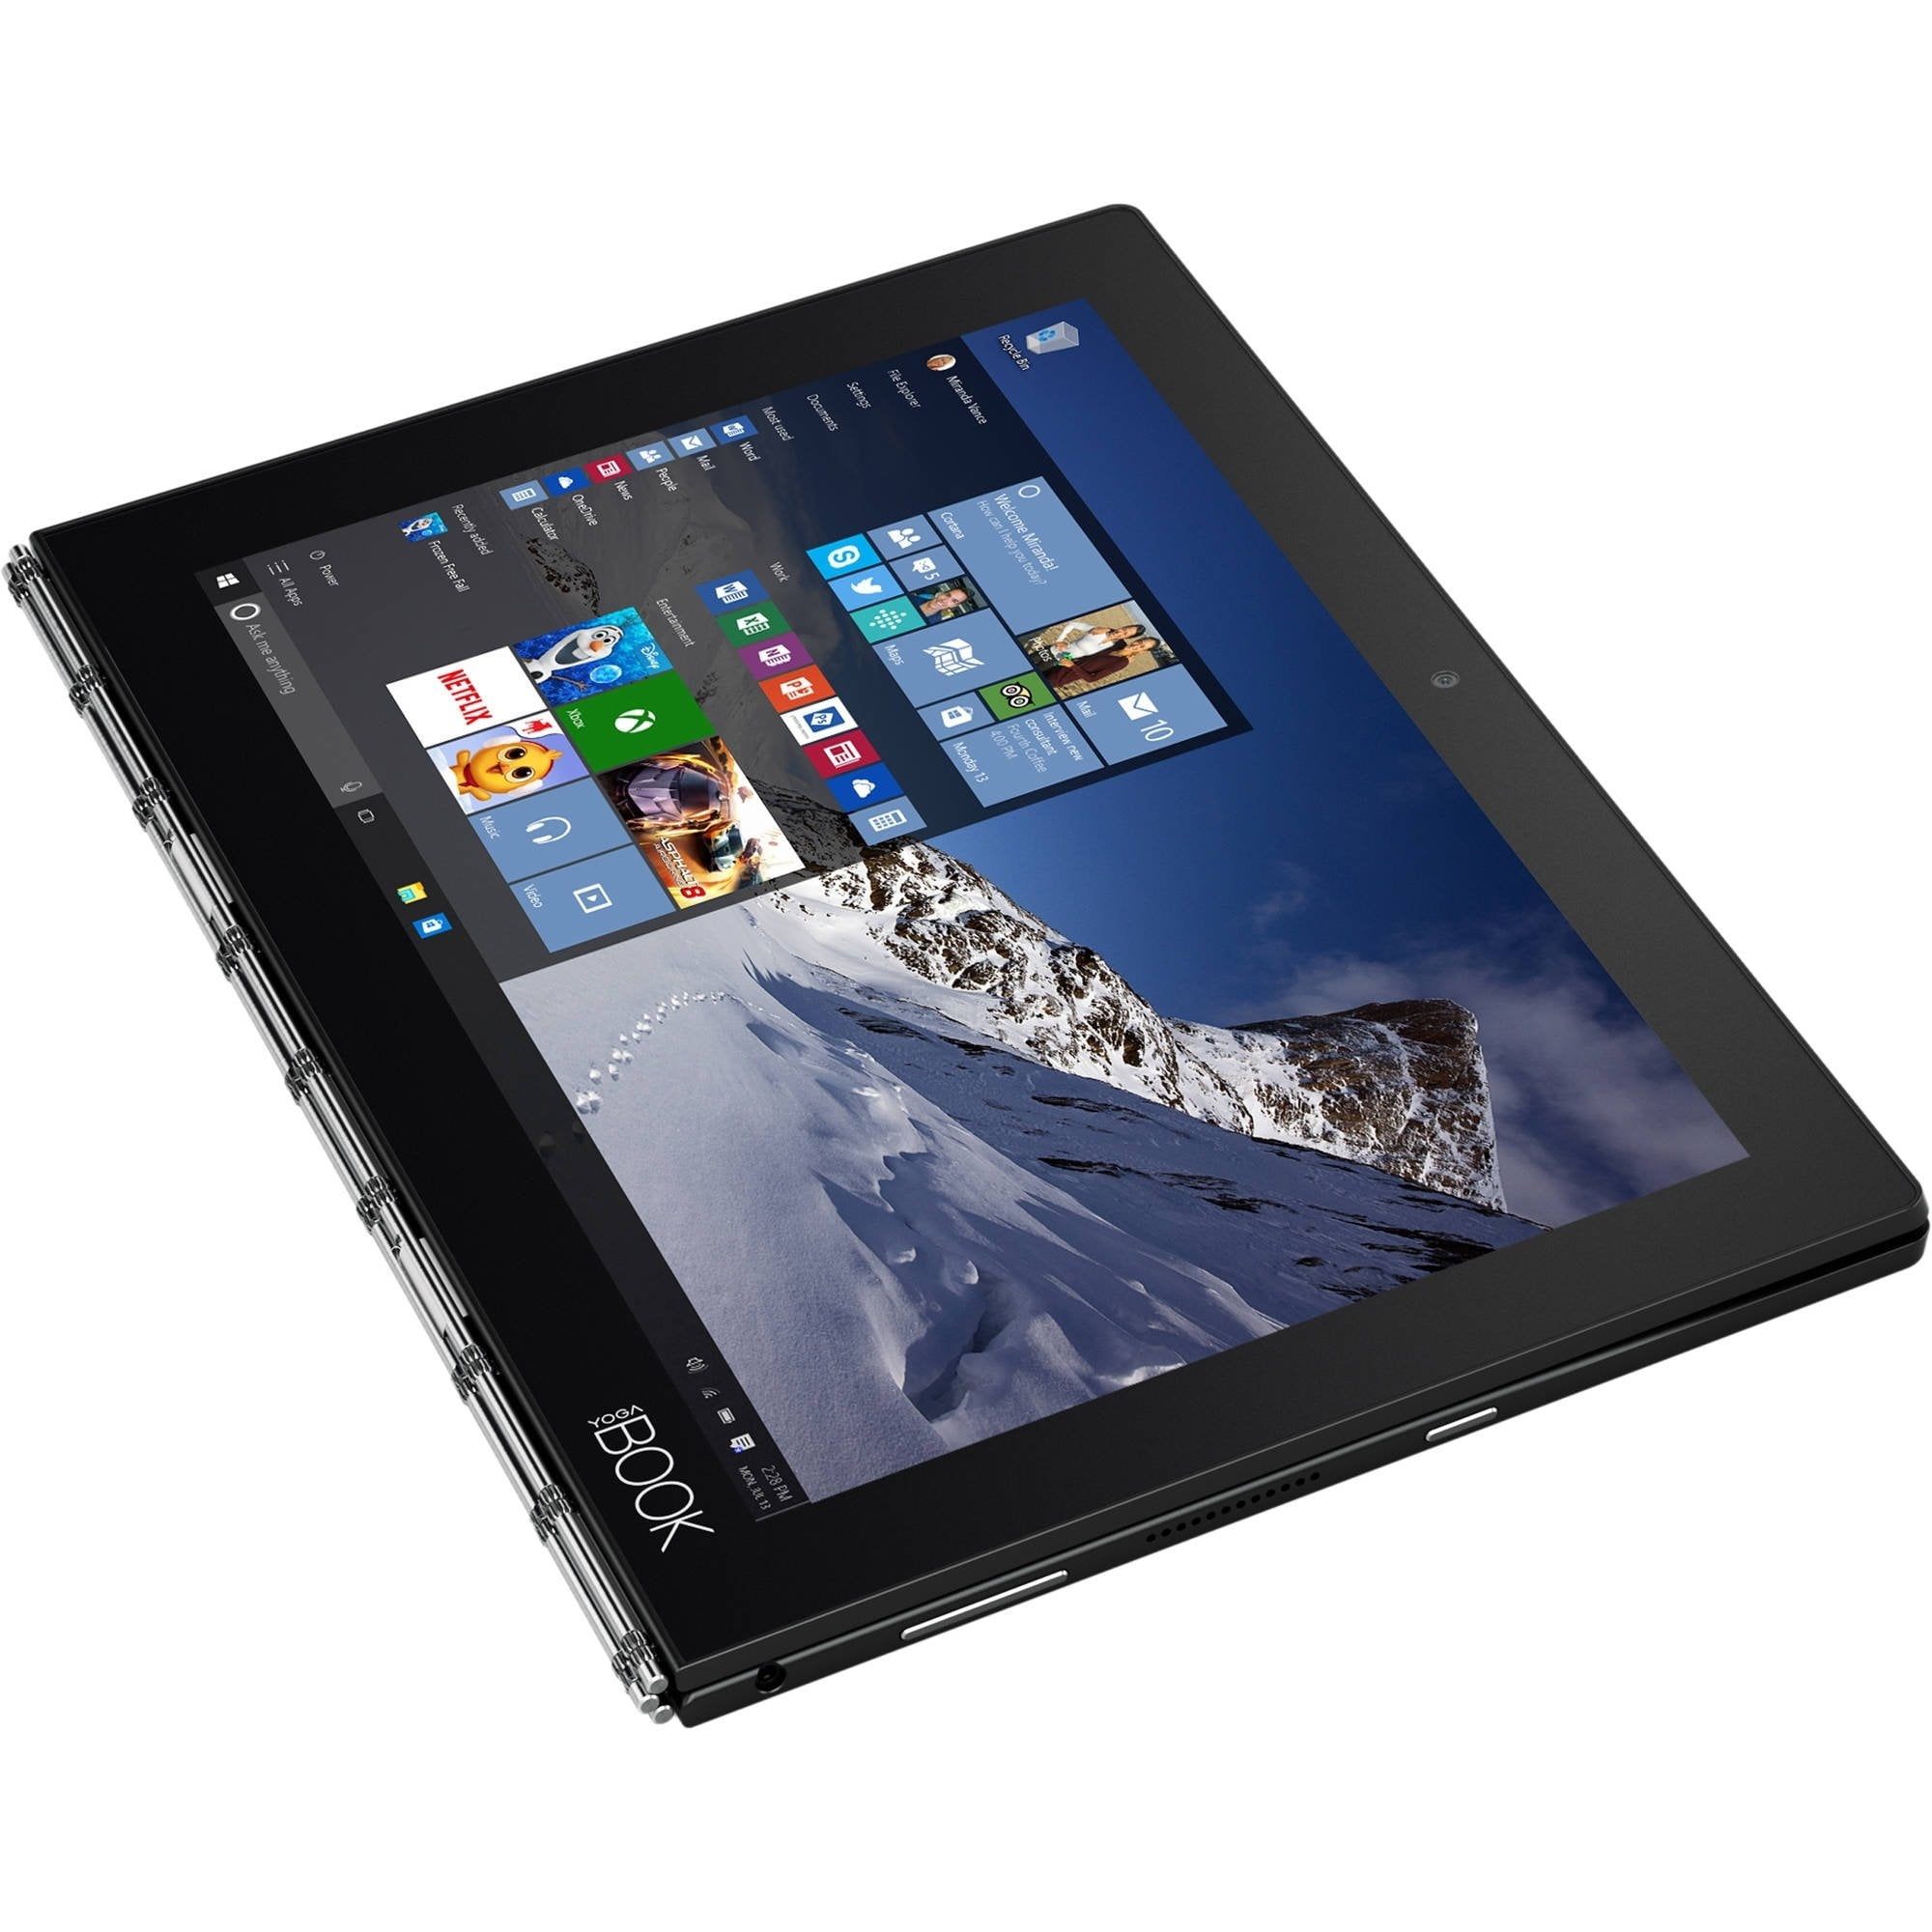 Lenovo Yoga Book YB1-X91F Intel Atom x5-Z8550 X4 1.44GHz 4GB 64GB 